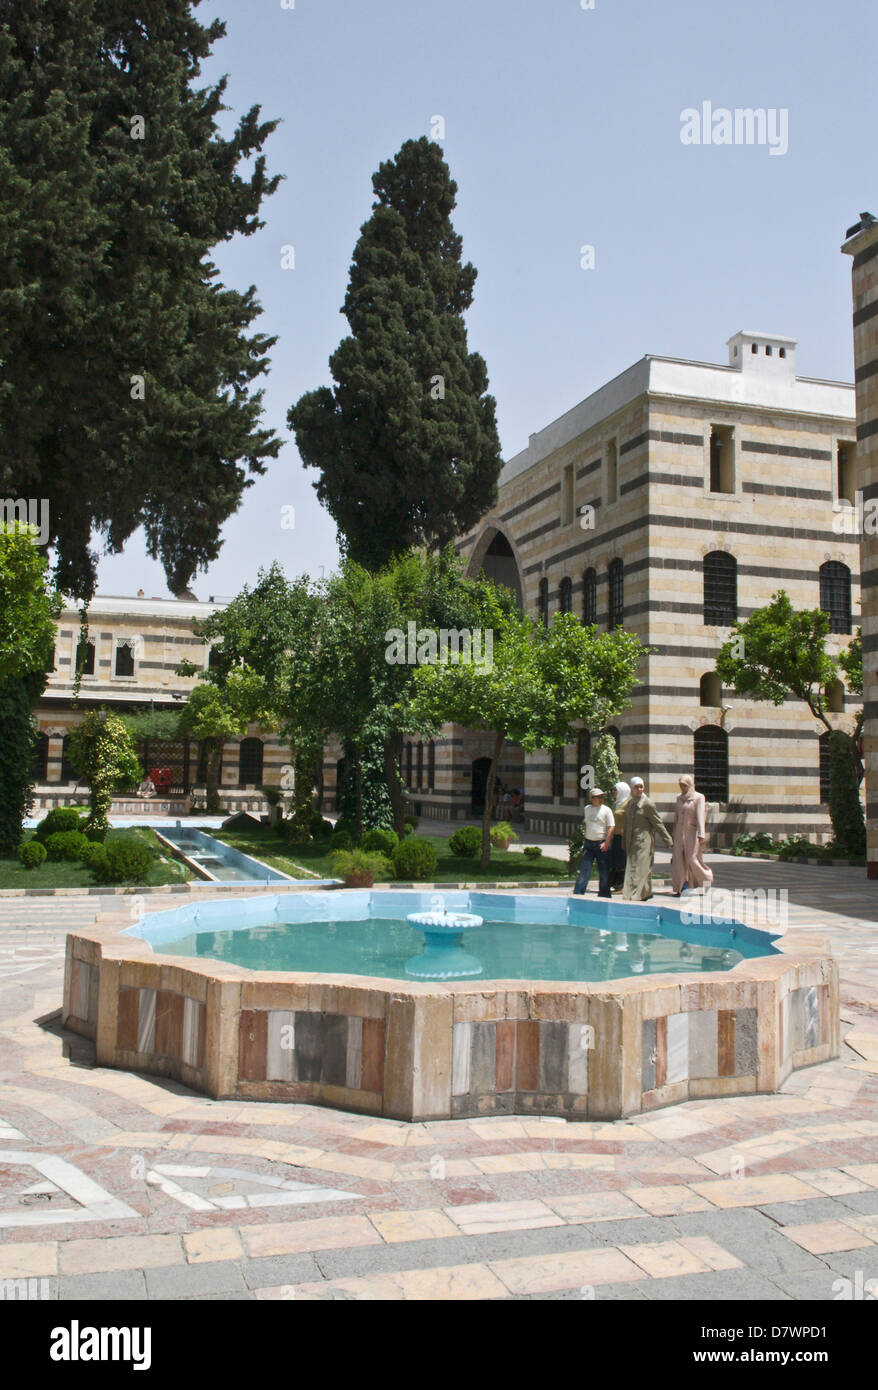 Damasco, Siria. Azem Palace, una vecchia residenza ottomana, ora il museo di arti popolari e tradizione. Architettura islamica. Fontana nel giardino. Foto Stock